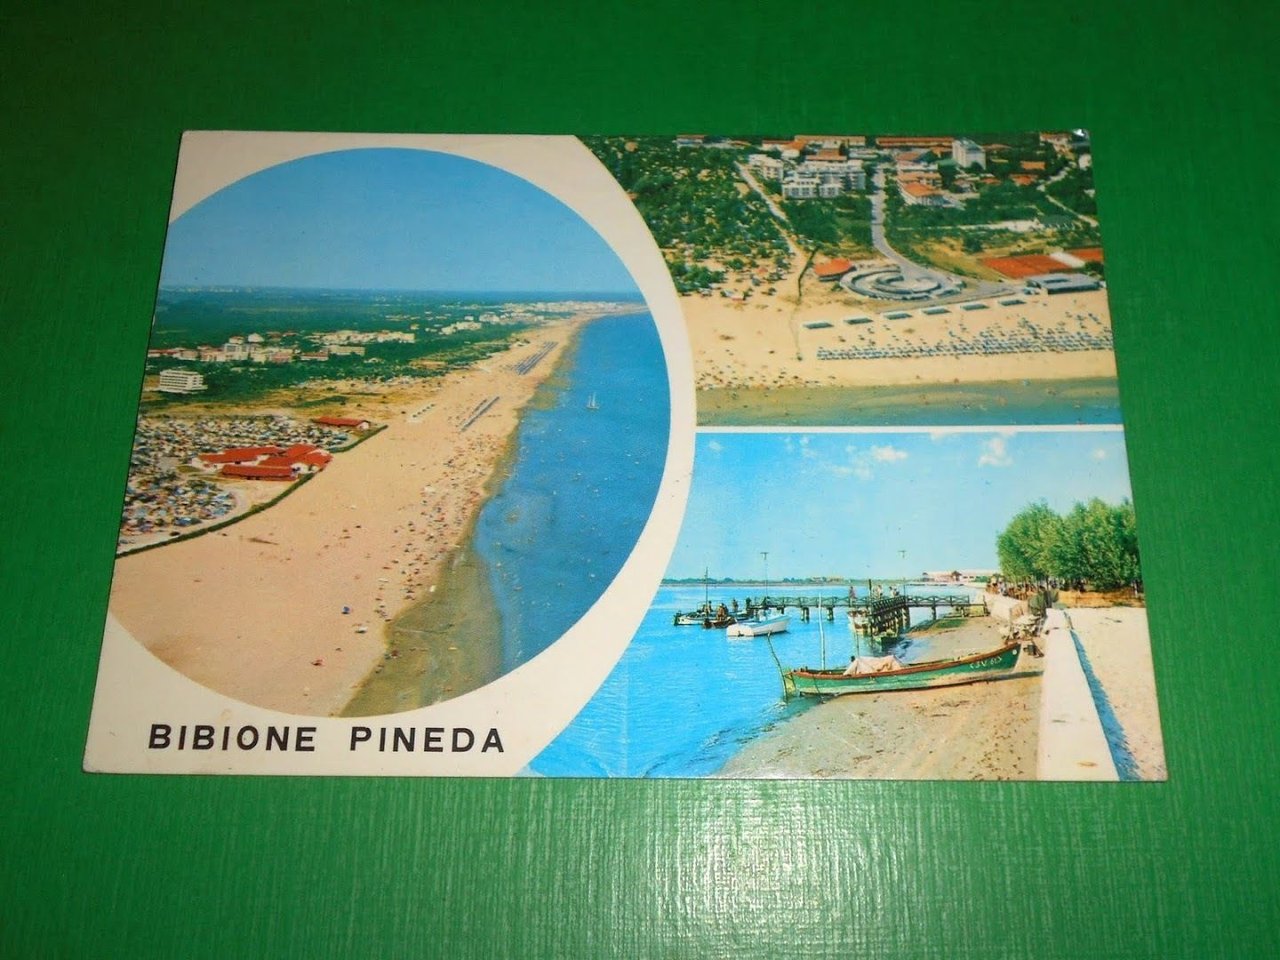 Cartolina Bibione Pineda - Veduta aerea - Pontile d'attracco 1975.